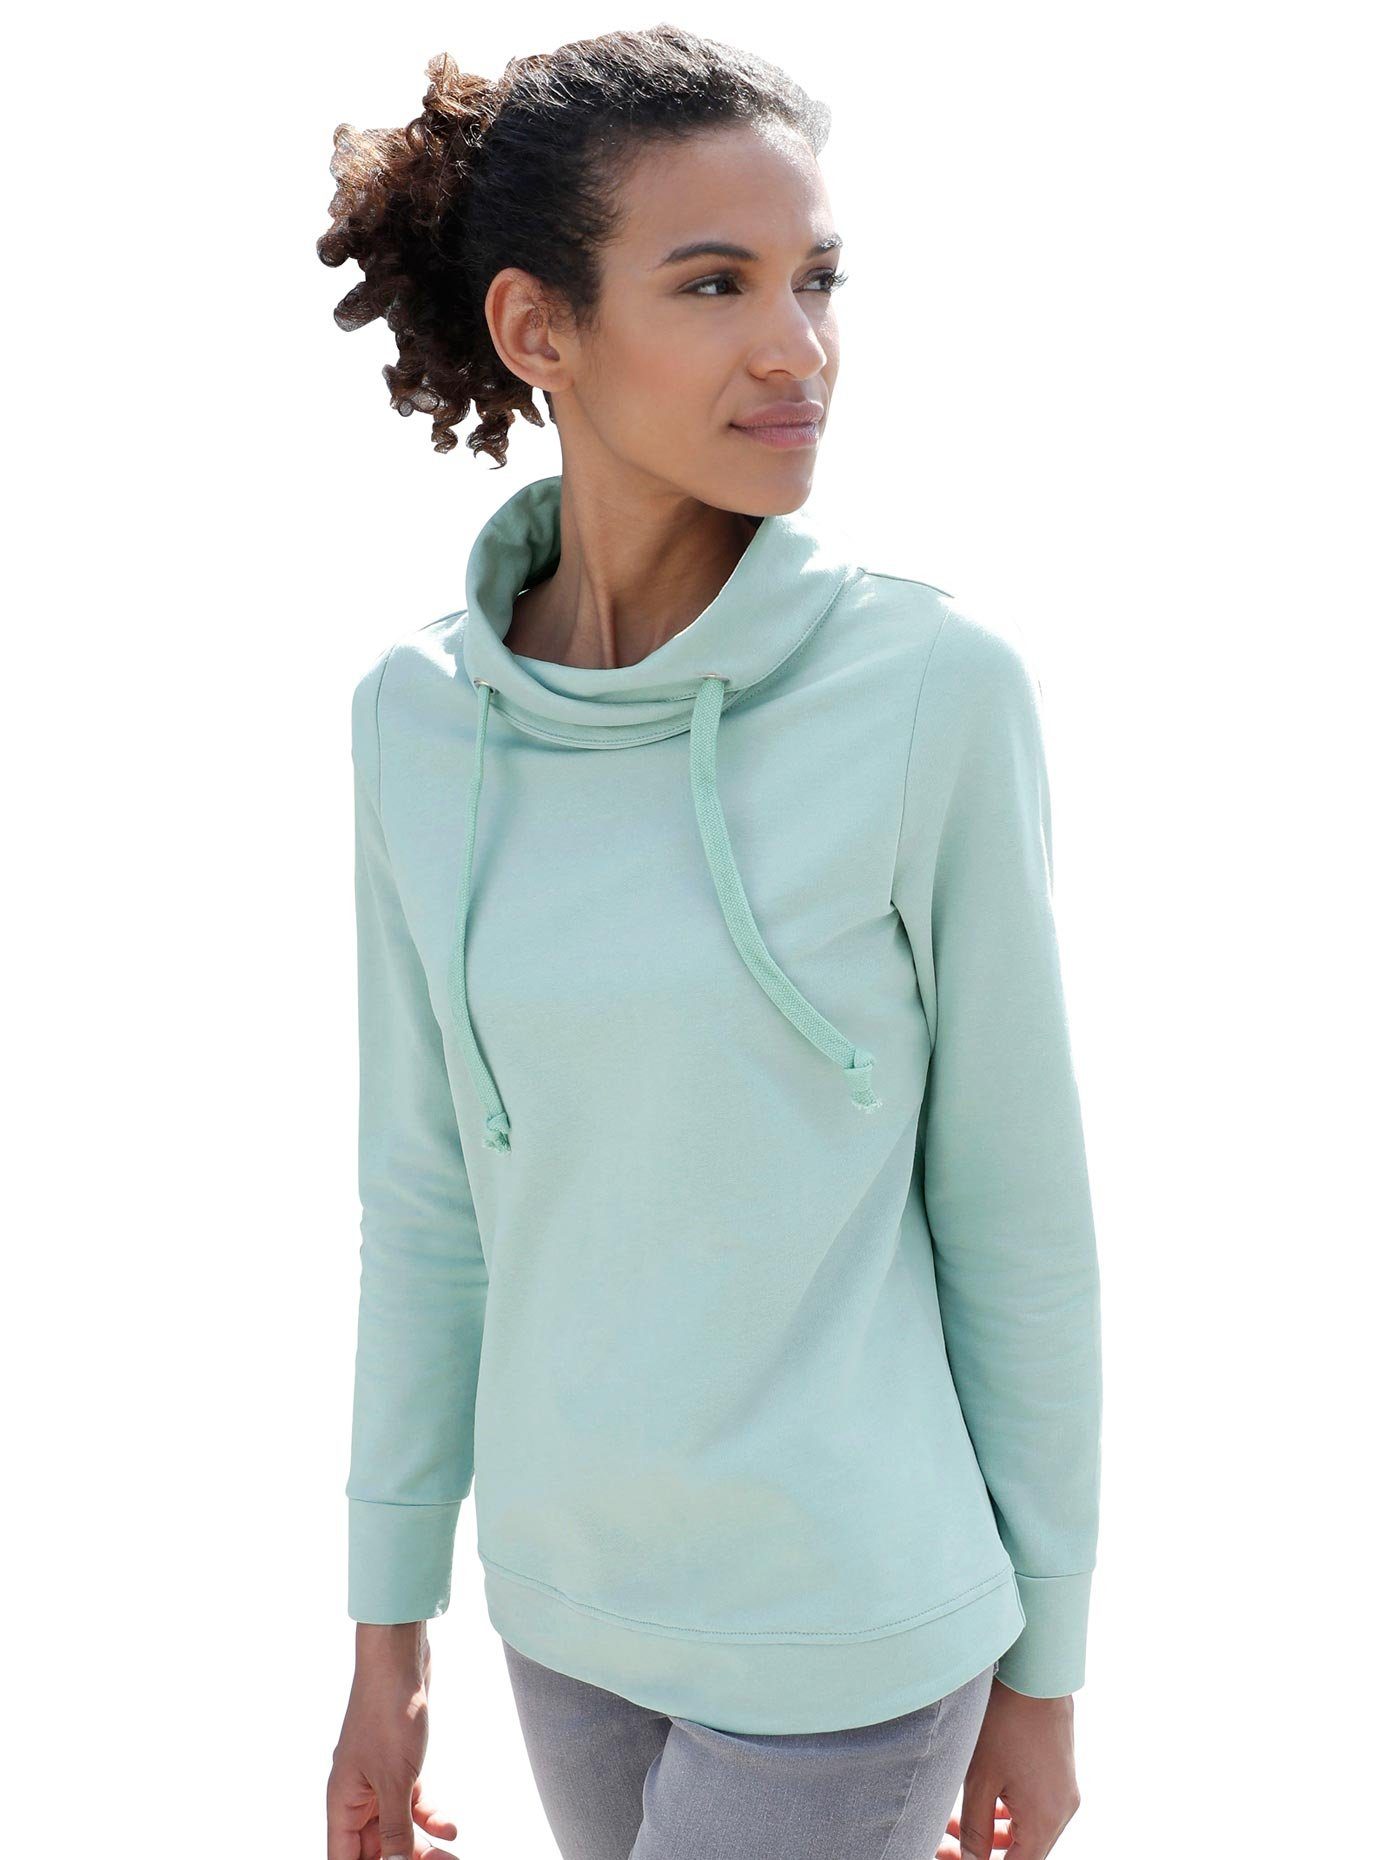 Damen Langarm Sweatshirts online kaufen | OTTO